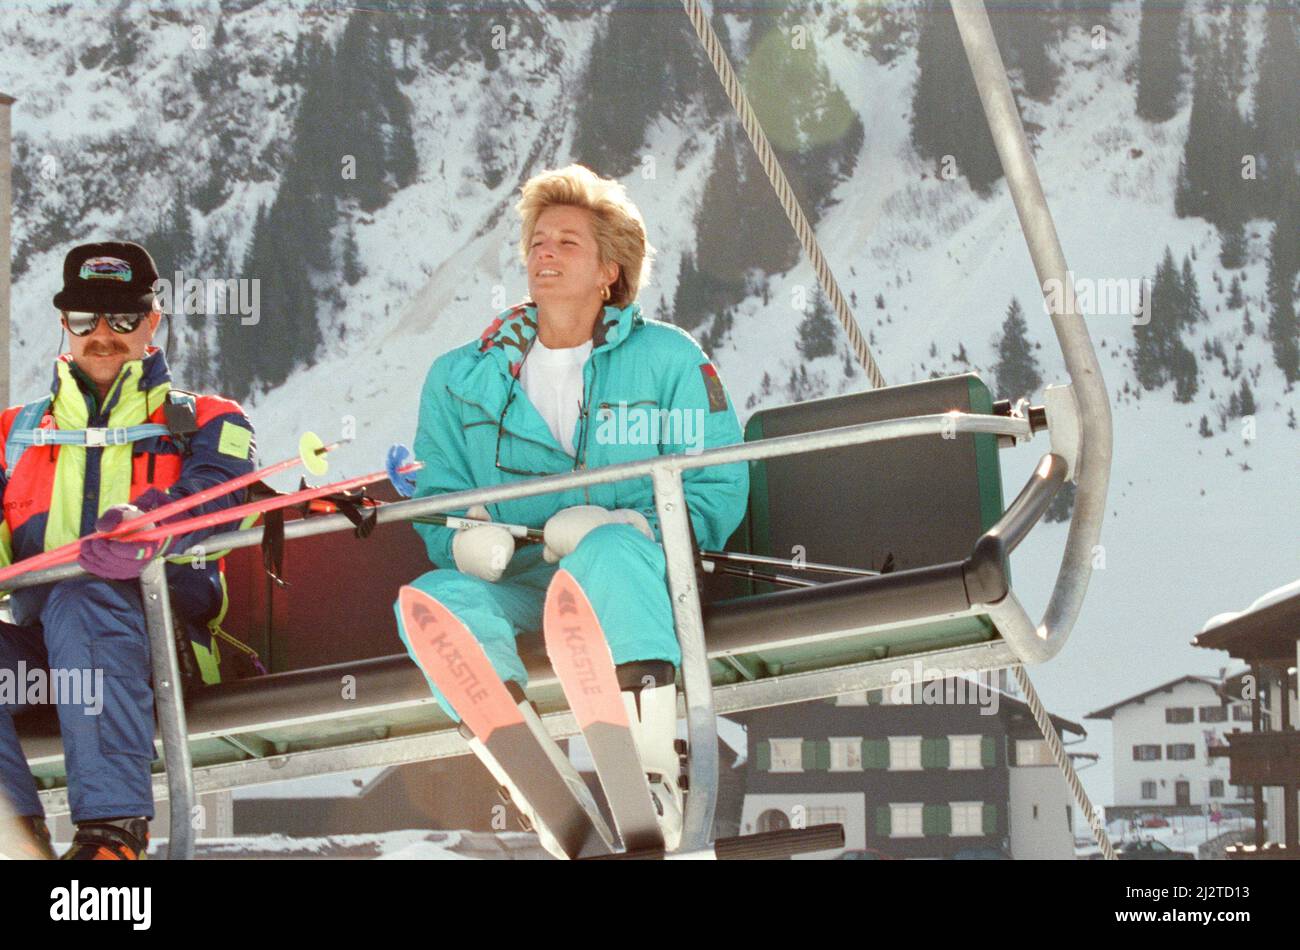 HRH la Principessa del Galles, la Principessa Diana, gode di una vacanza sciistica a Lech, Austria. Il principe William e il principe Harry si uniscono a lei per il viaggio. Foto scattata il 1st aprile 1993 Foto Stock